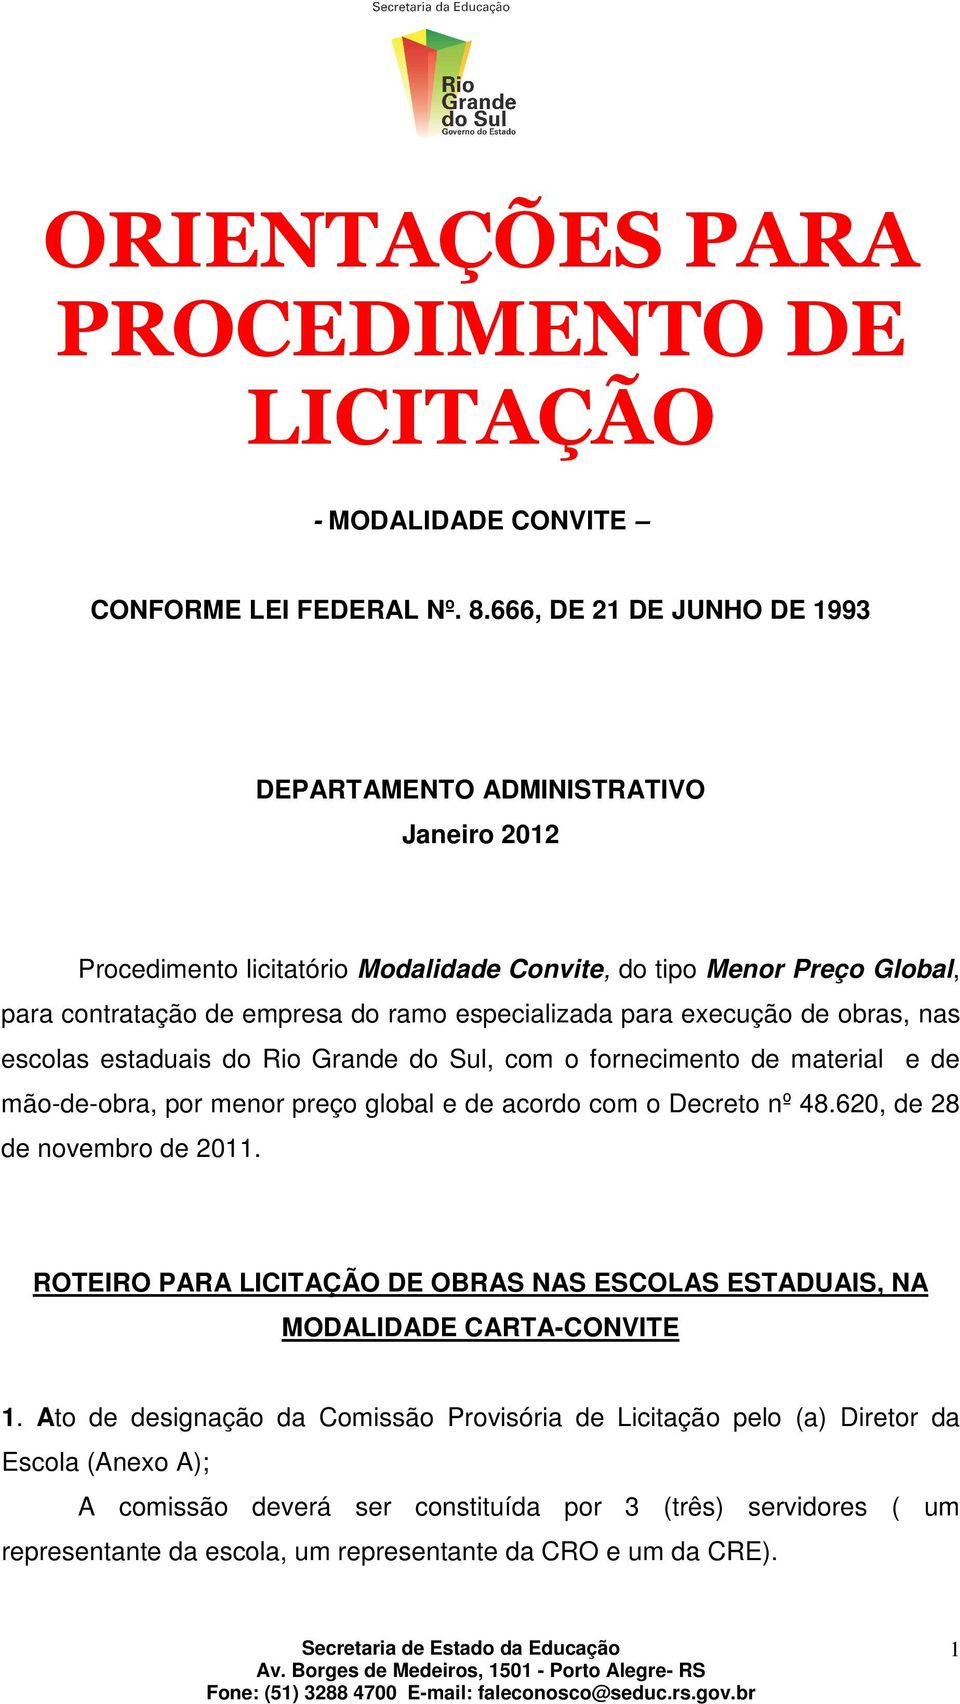 execução de obras, nas escolas estaduais do Rio Grande do Sul, com o fornecimento de material e de mão-de-obra, por menor preço global e de acordo com o Decreto nº 48.620, de 28 de novembro de 2011.